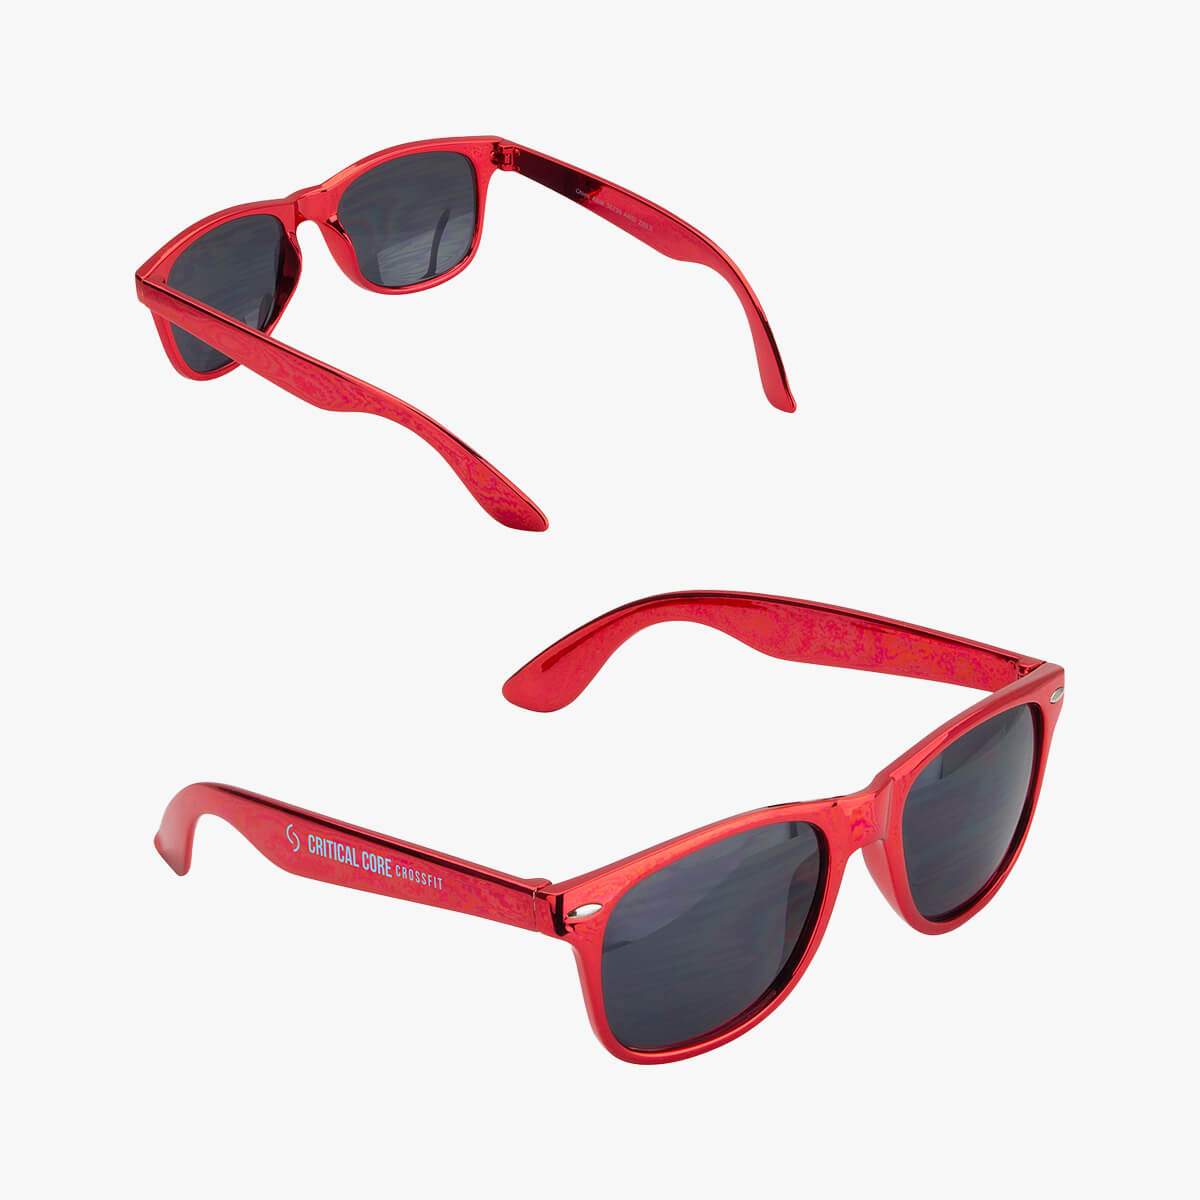 Surfside Metallic Sunglasses